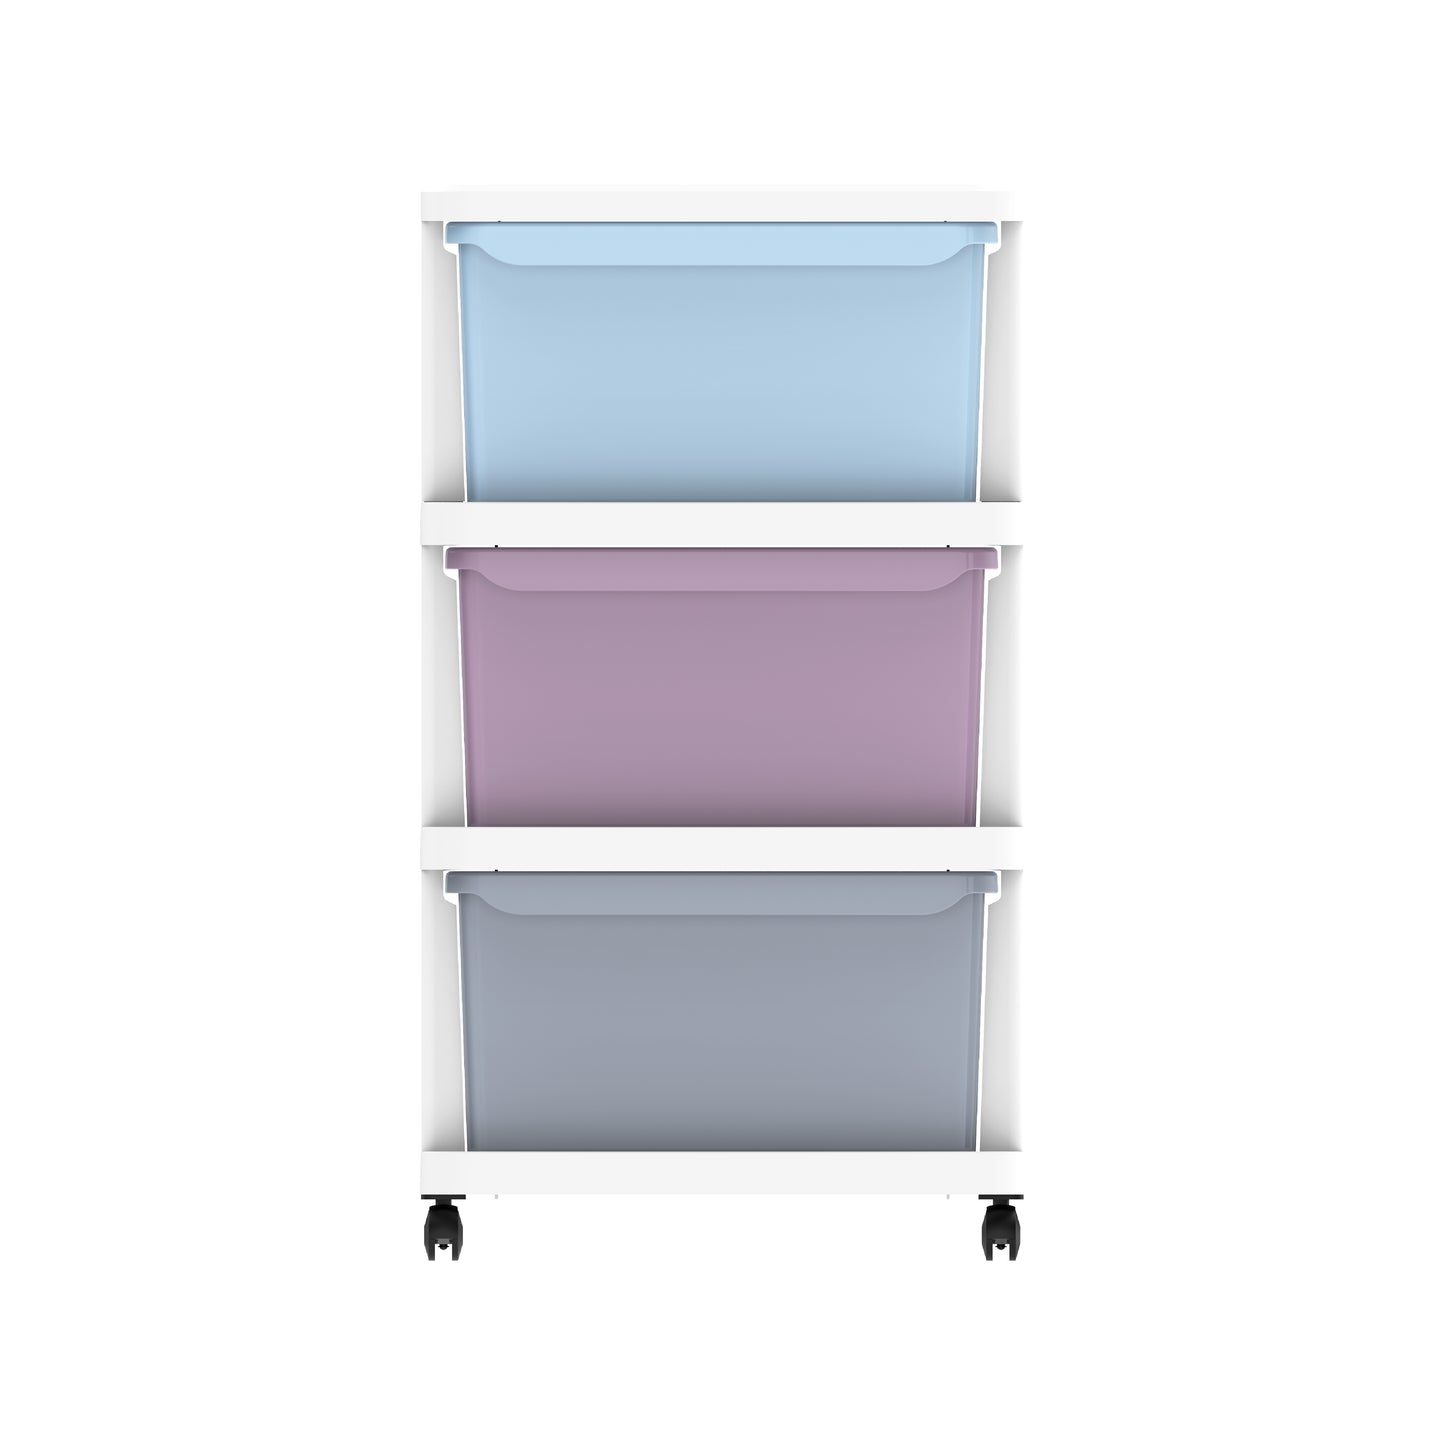 Disney Frozen Multipurpose Storage Cabinet 3 with Wheels